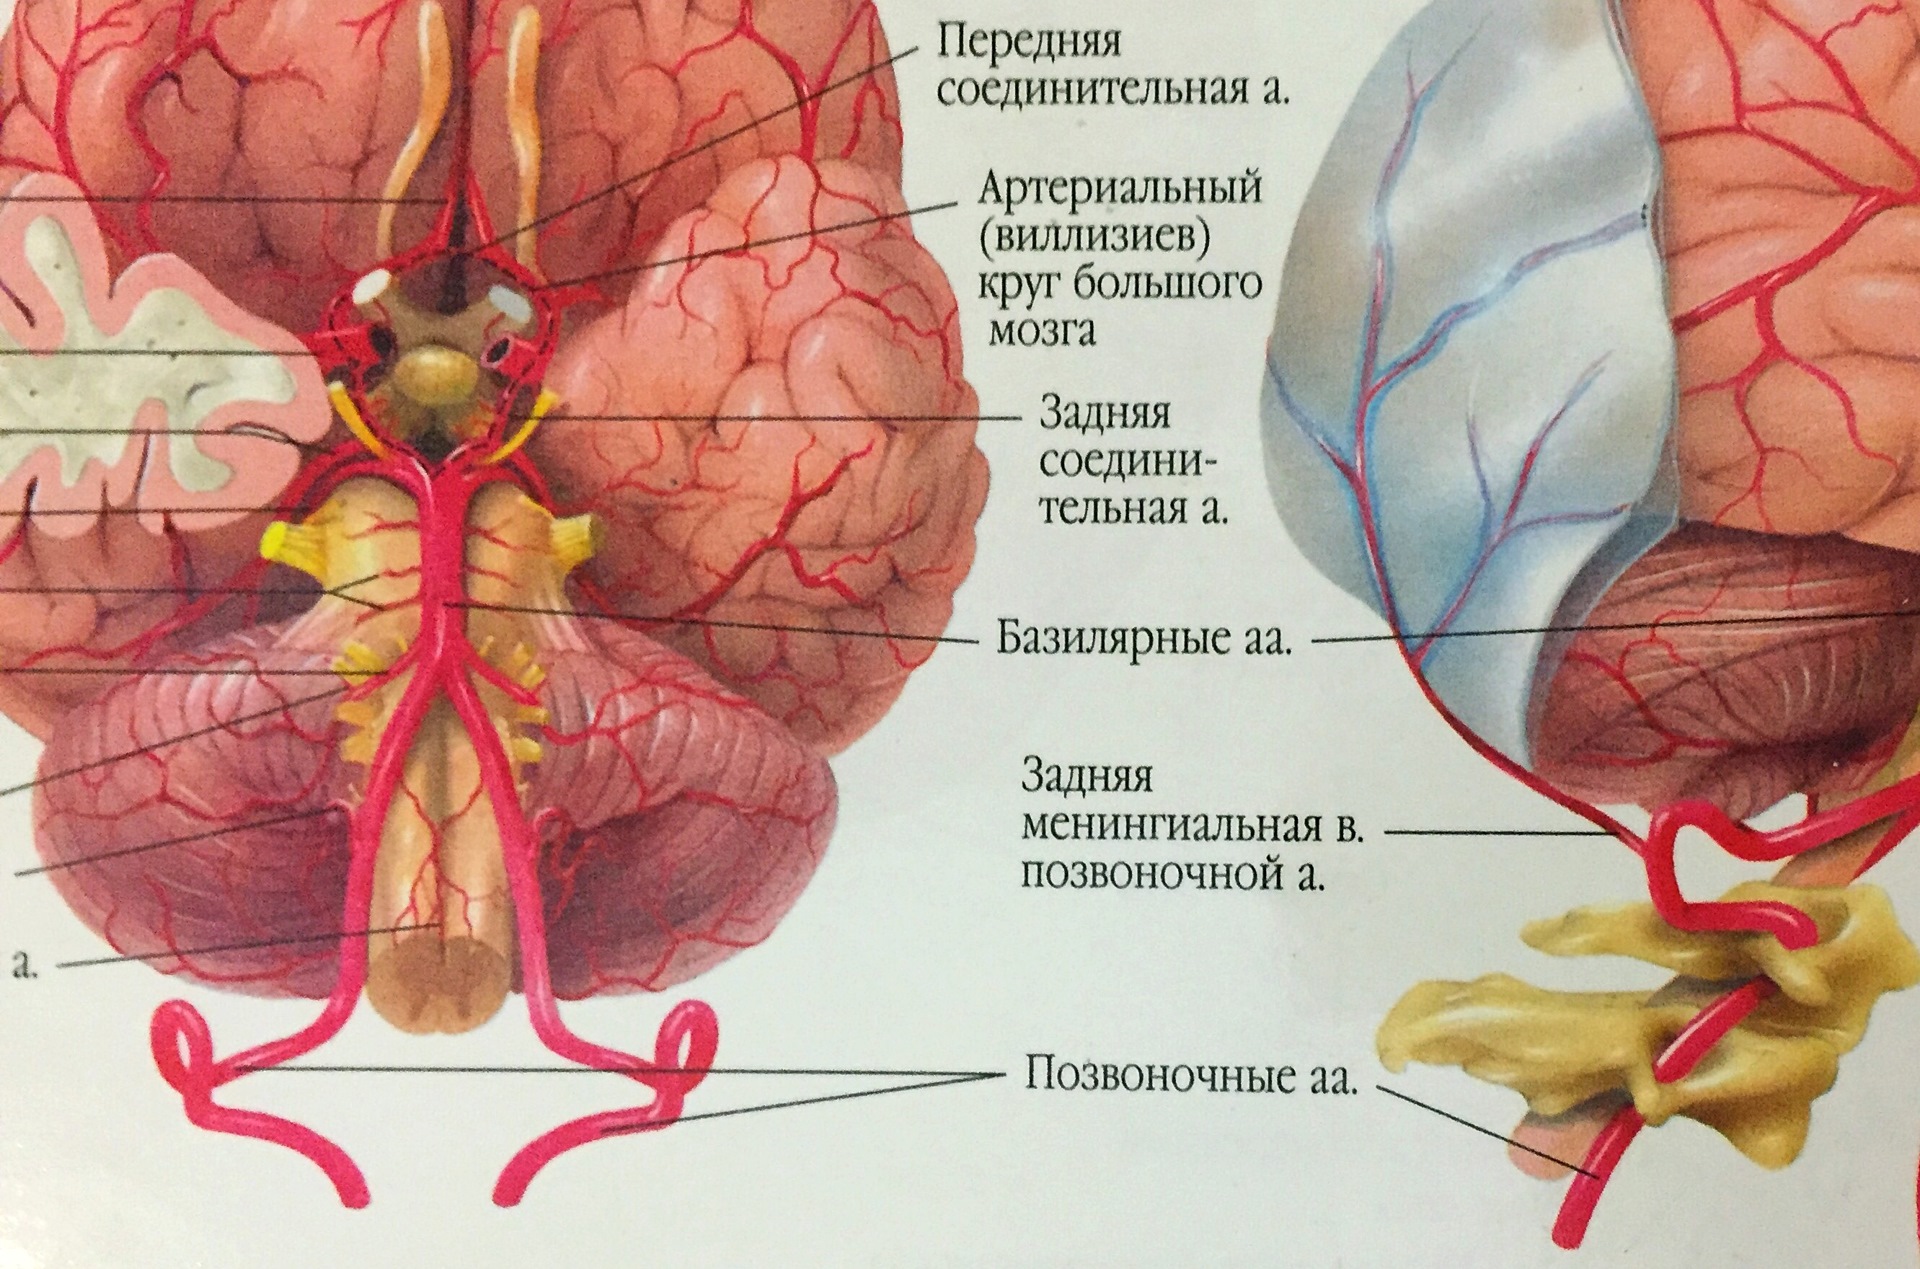 Кровоснабжение головного мозга анатомия Виллизиев круг